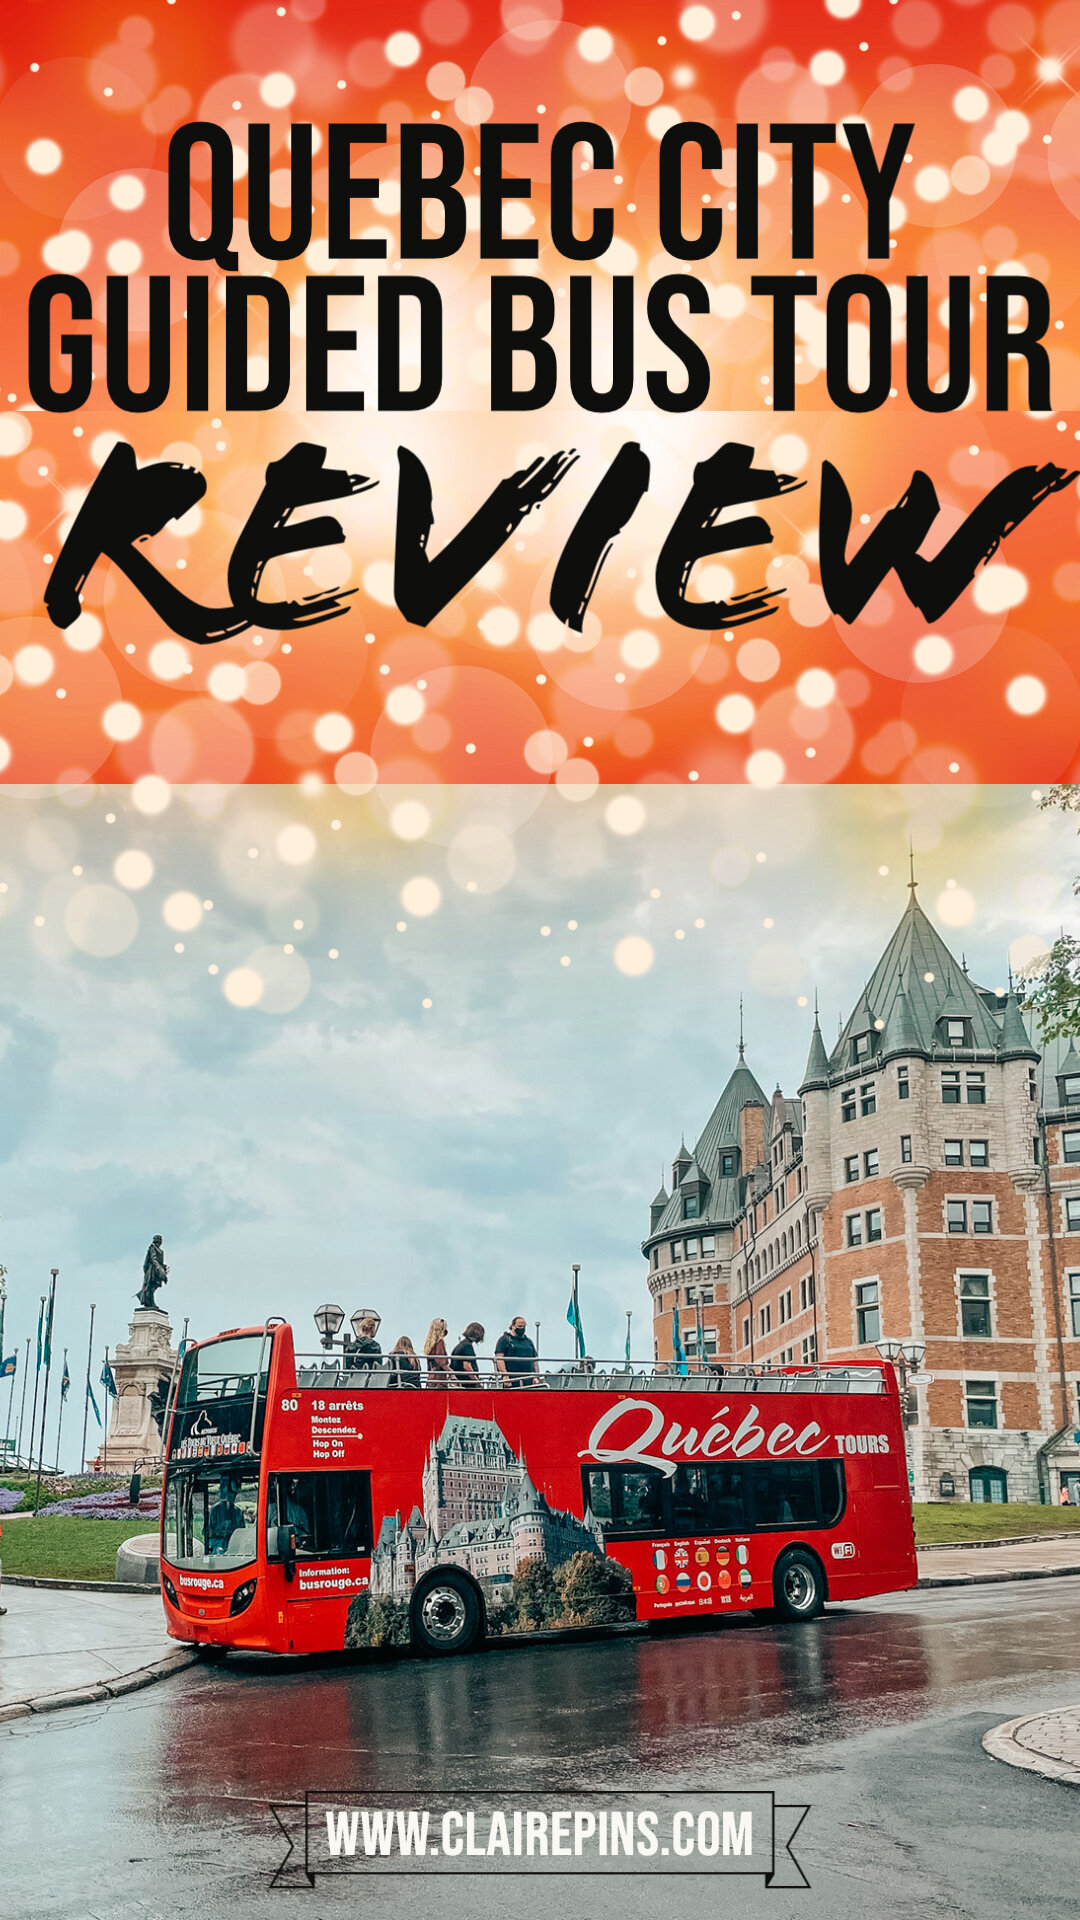 Bus Tour of Quebec City Review.jpg